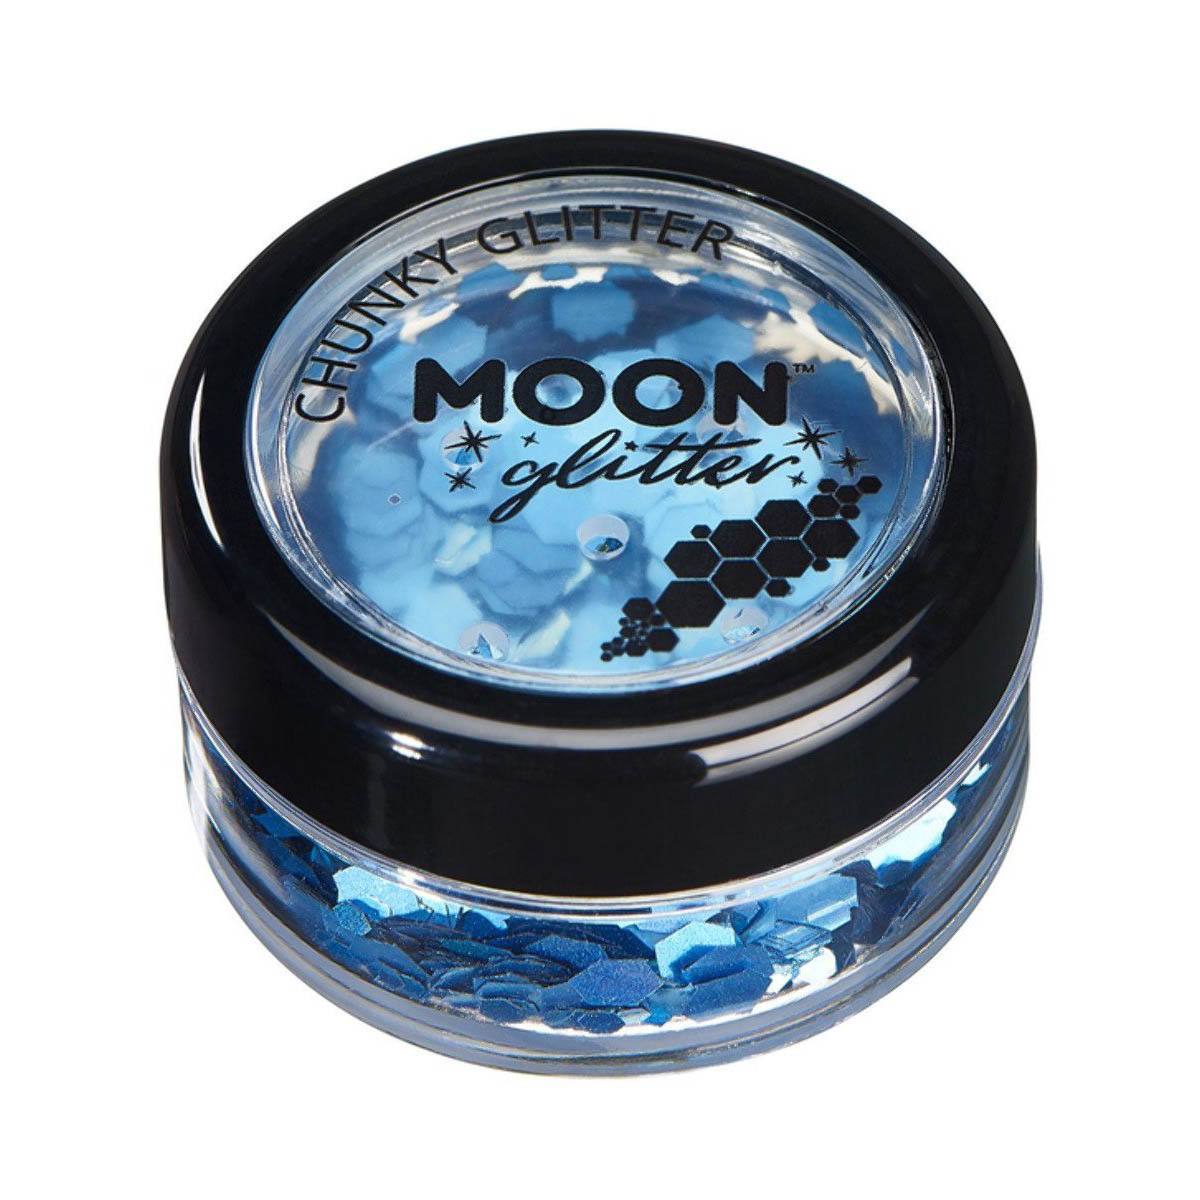 Moon glitter i burk chunky holografisk 3g Blå